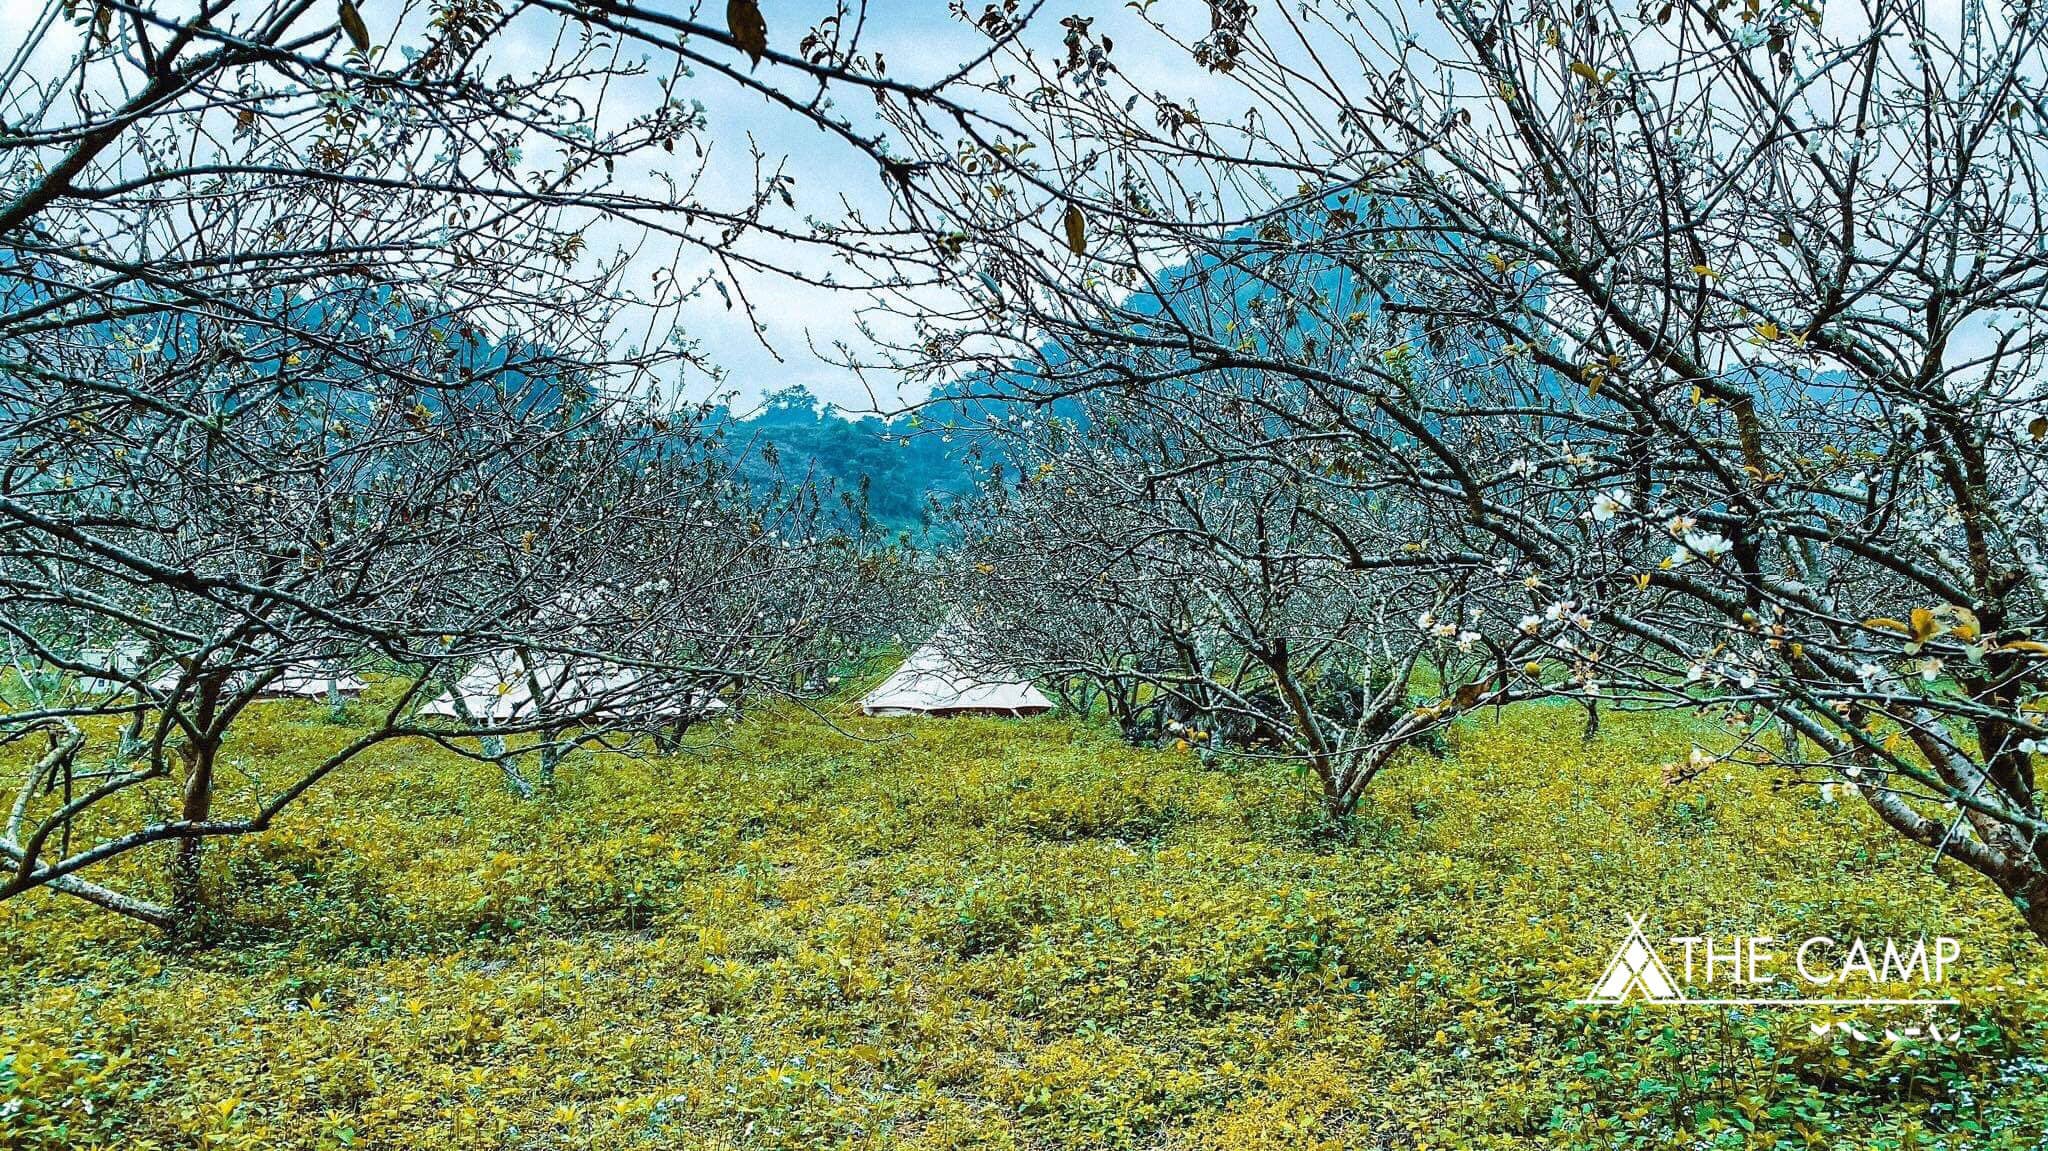 The Camp Mộc Châu – Hà Nội